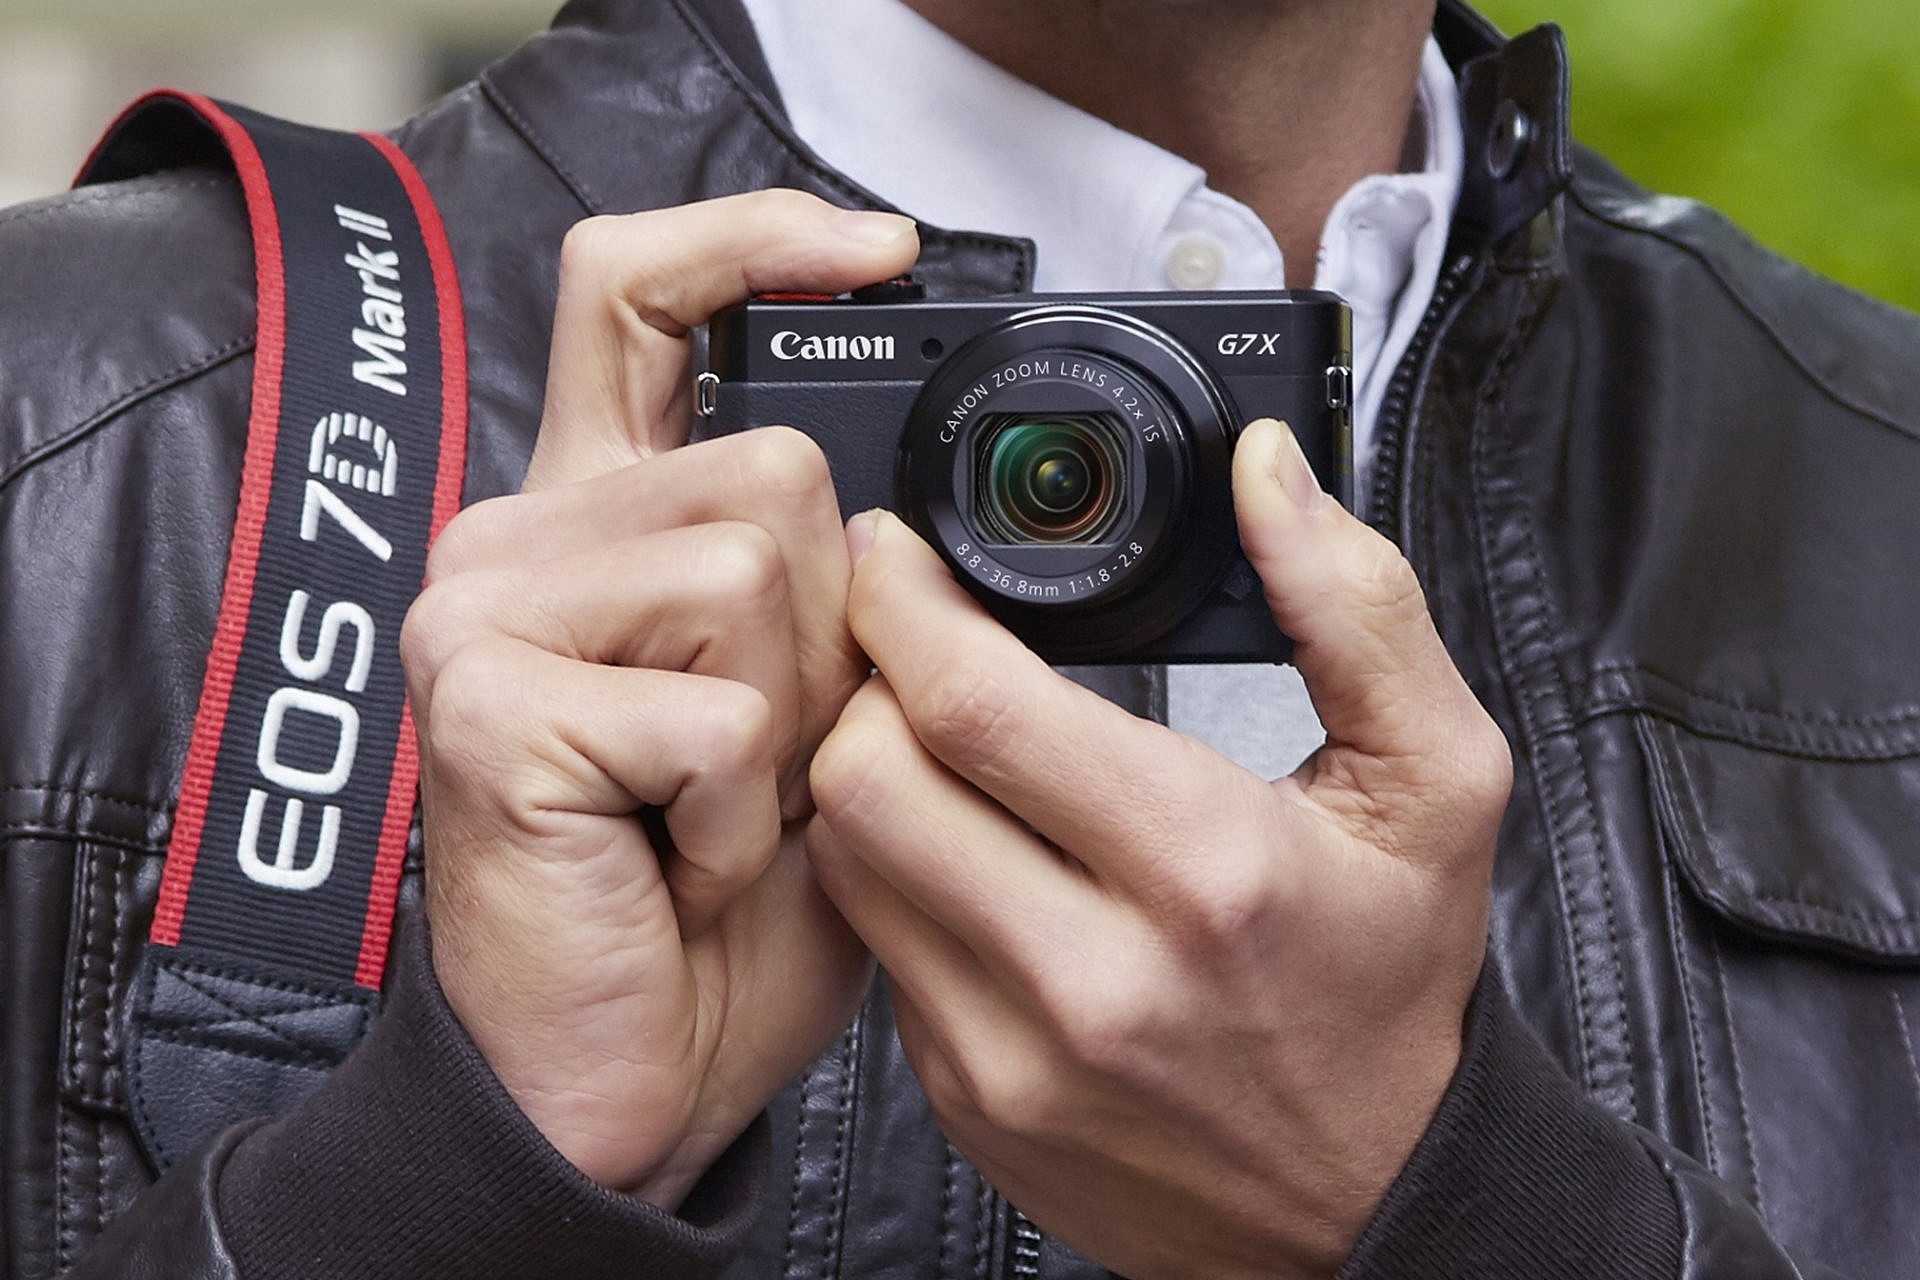 รีวิวกล้อง Canon PowerShot G7X Mark II ถ่ายภาพสวยดุจกล้องระดับโปร